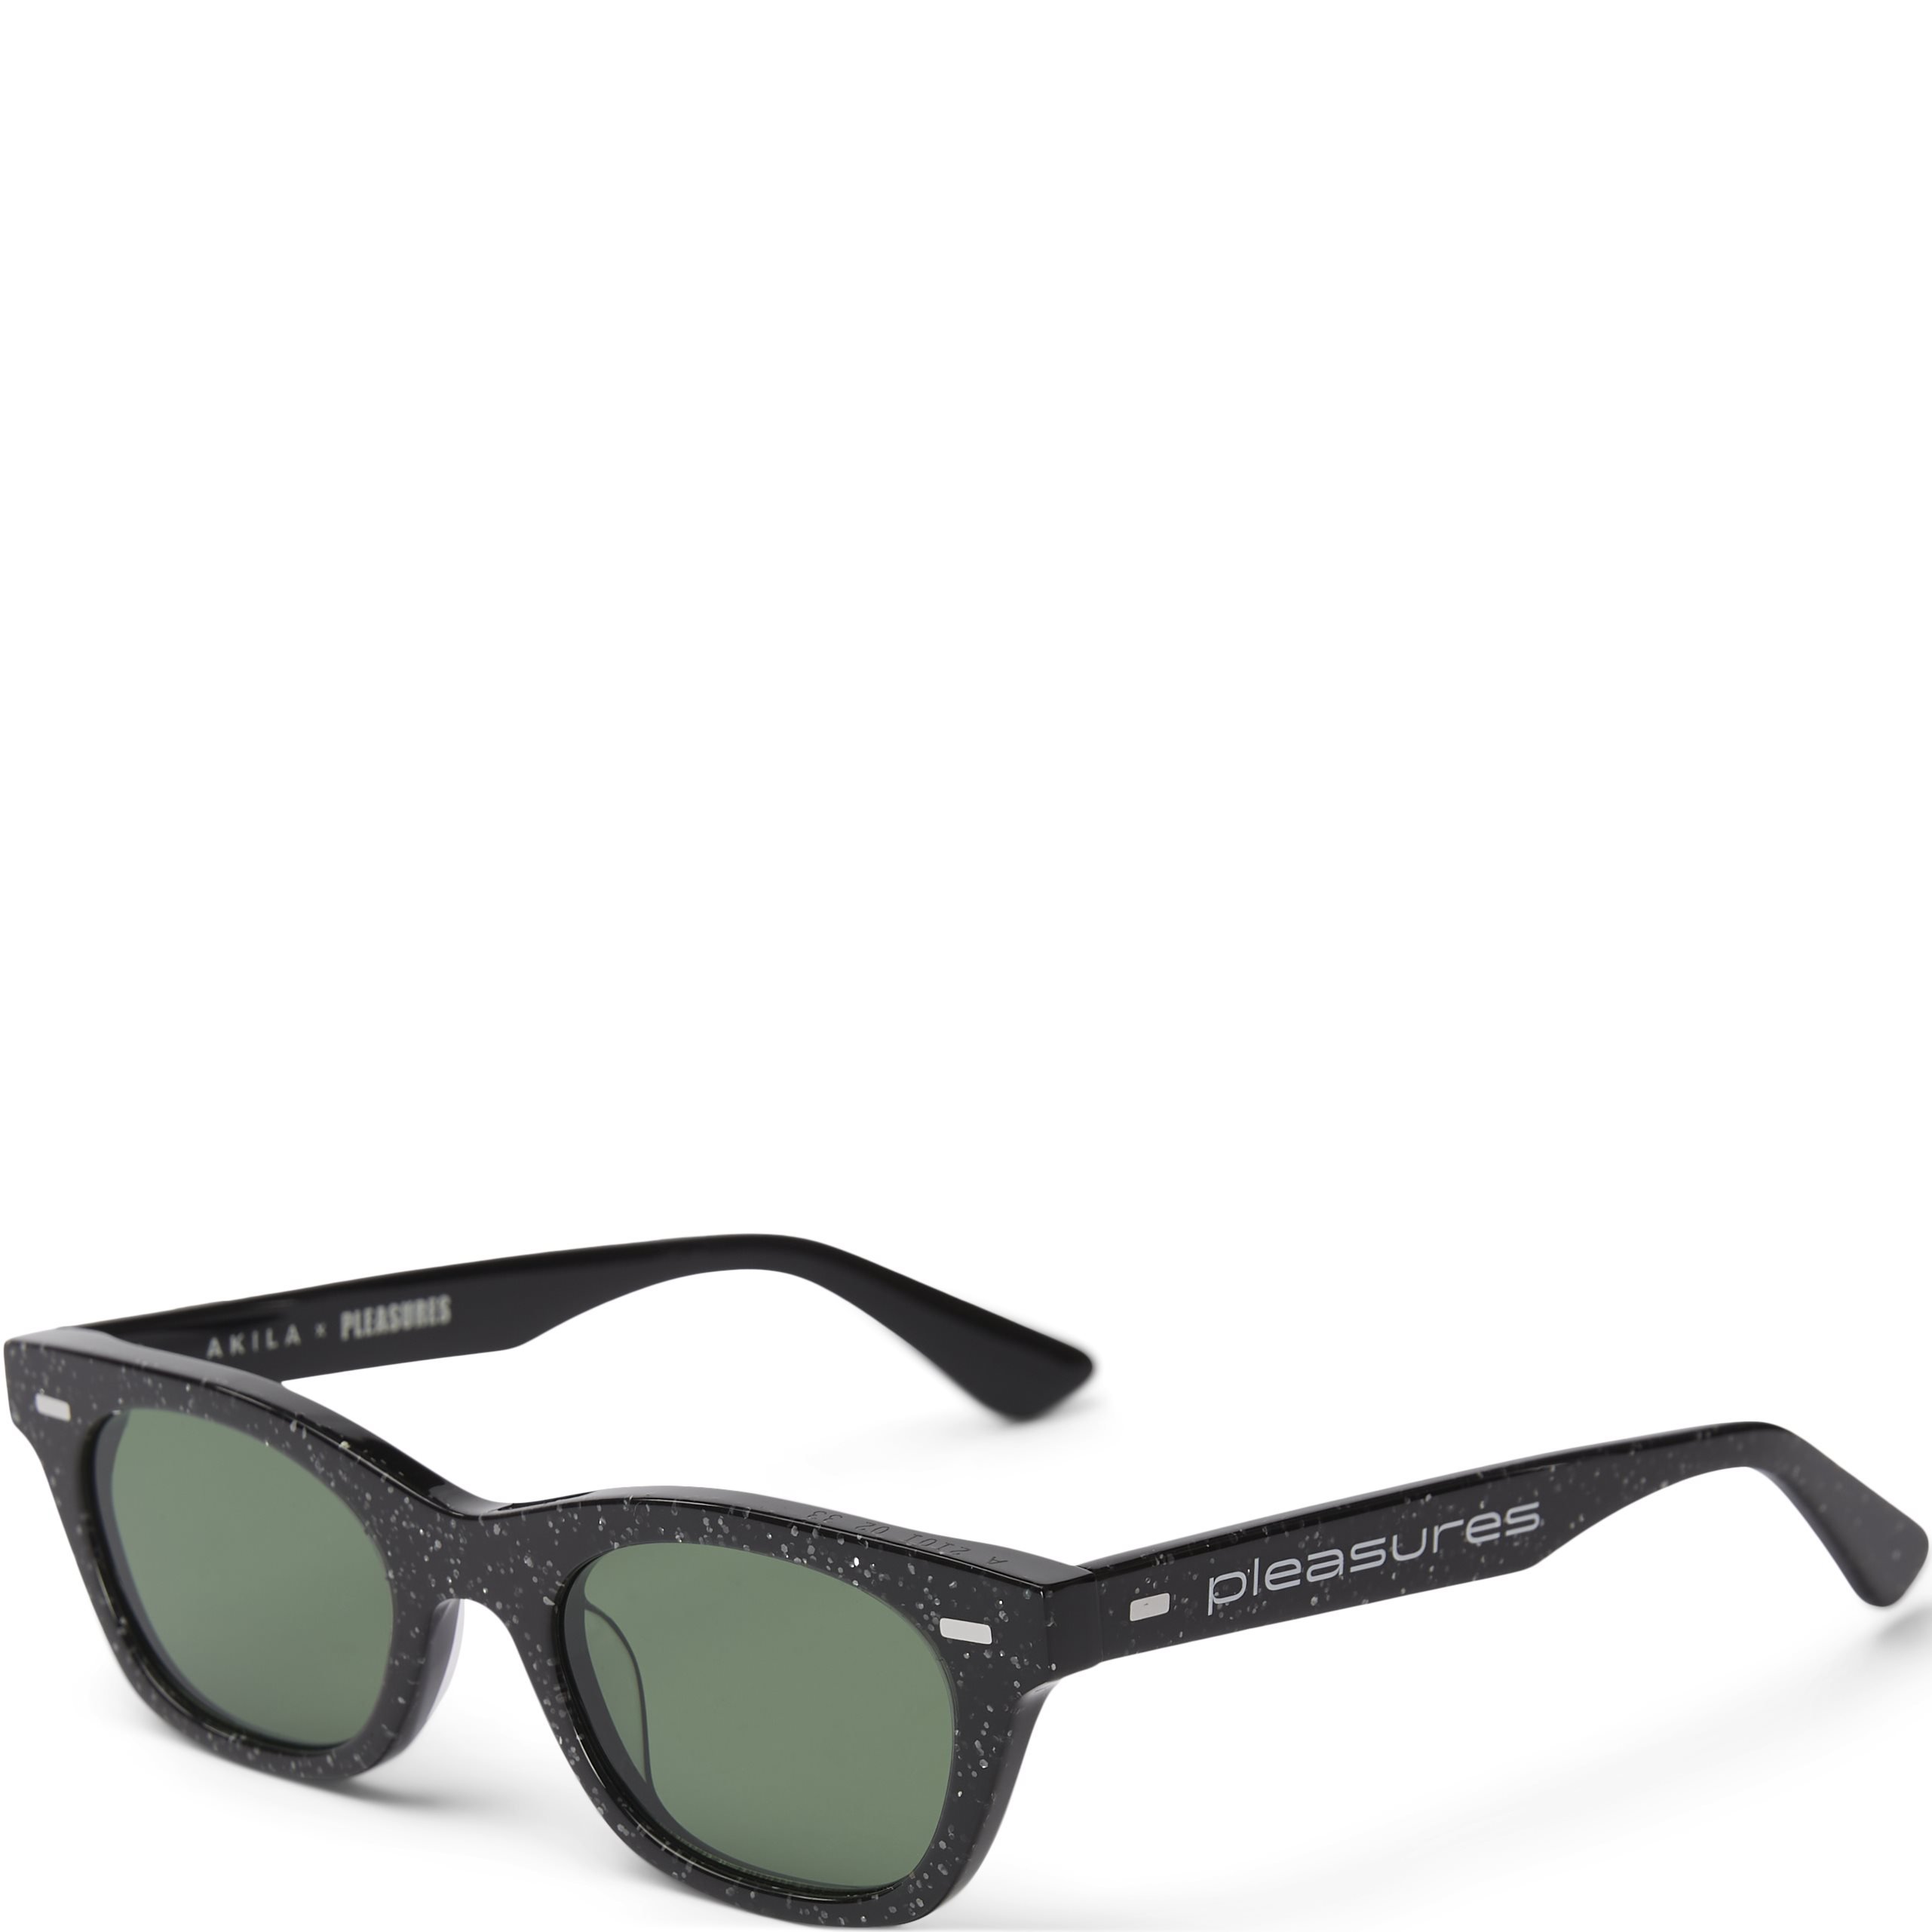 Method Sunglasses - Accessories - Black